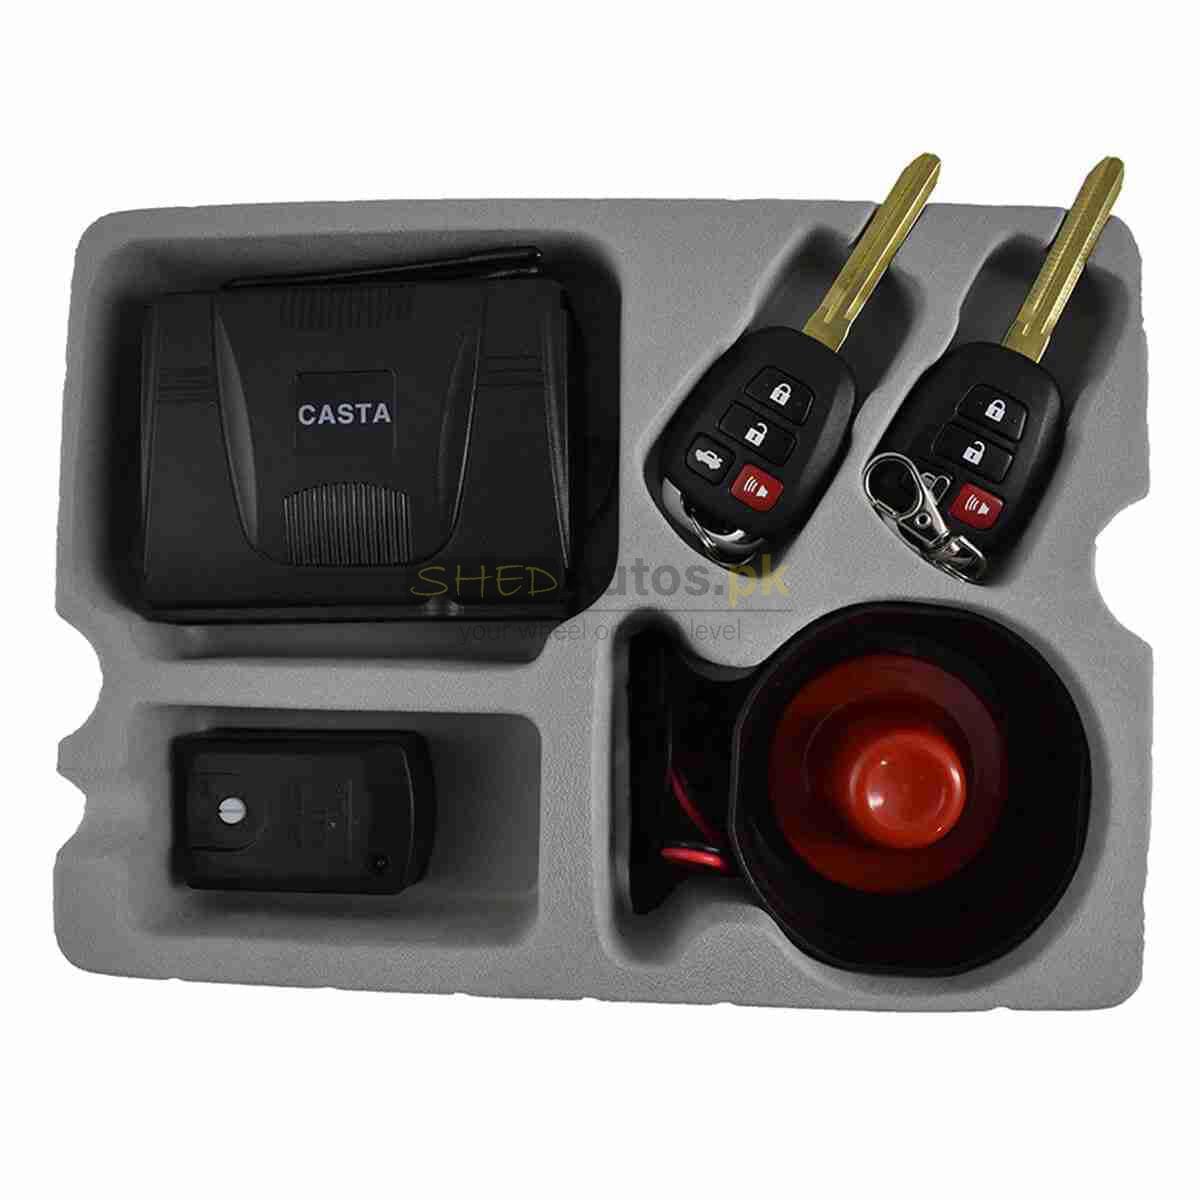 Casta burglar alarm system - ShedAutos.PK